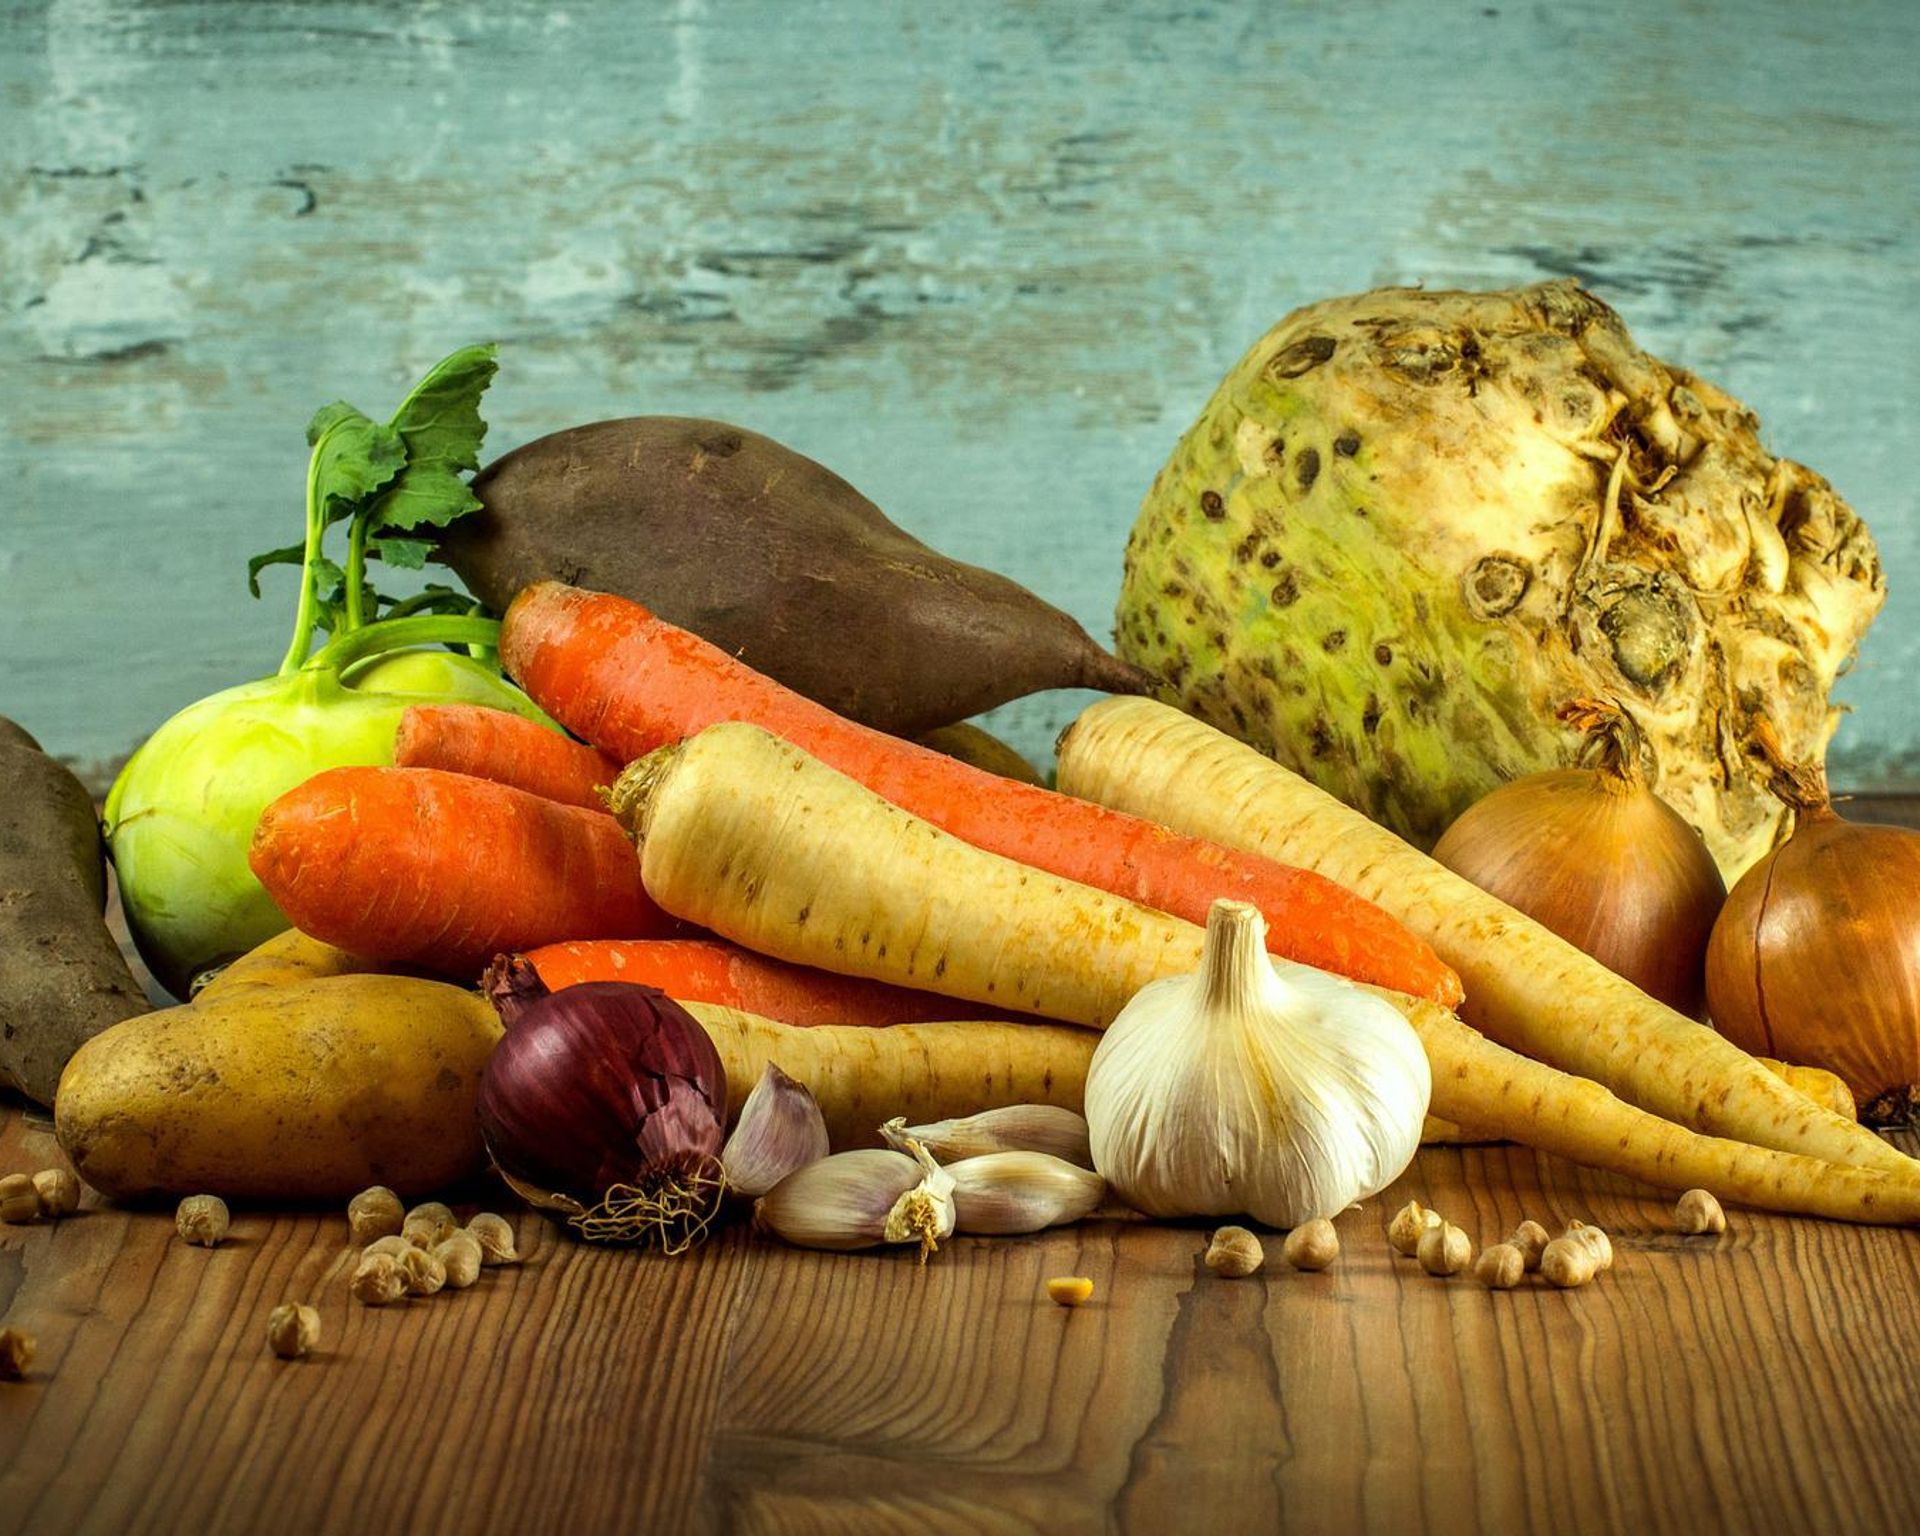 Rôzne druhy surovej zeleniny - mrkvy, petržleny, kaleráb, zeler, batáty, cibule, hlavička cesnaku